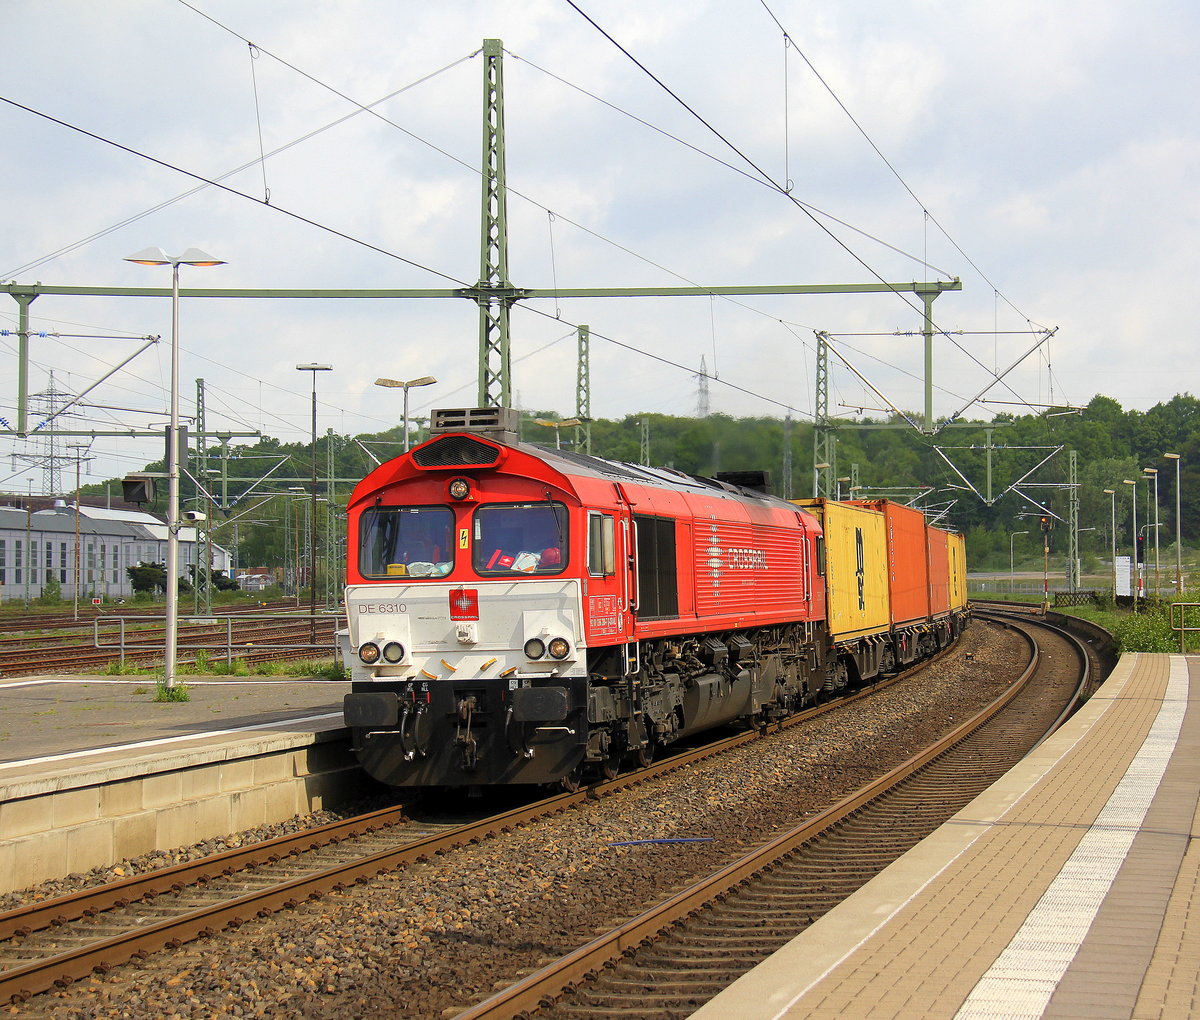 Die Class 66 DE6310  Griet  von Crossrail kommt als Umleiter mit einem MSC-Containerzug aus Germersheim(D) nach Antwerpen-Krommenhoek(B) und kommt aus Richtung Rheydt,Wickrath,Beckrath,Herrath,Erkelenz,Baal,Hückelhoven-Baal,Brachelen,Lindern,Süggerath,Geilenkirchen,Frelenberg,Übach-Palenberg,Rimburg,Finkenrath,Hofstadt und fährt durch Herzogenrath und fährt gleich die Kohlscheider-Rampe hoch in Richtung Kohlscheid,Richterich,Laurensberg,Aachen-West. Aufgenommen am Bahnhof von Herzogenrath. 
Bei schöenem Sonnenschein und Wolken am Vormittag vom 1.5.2018.